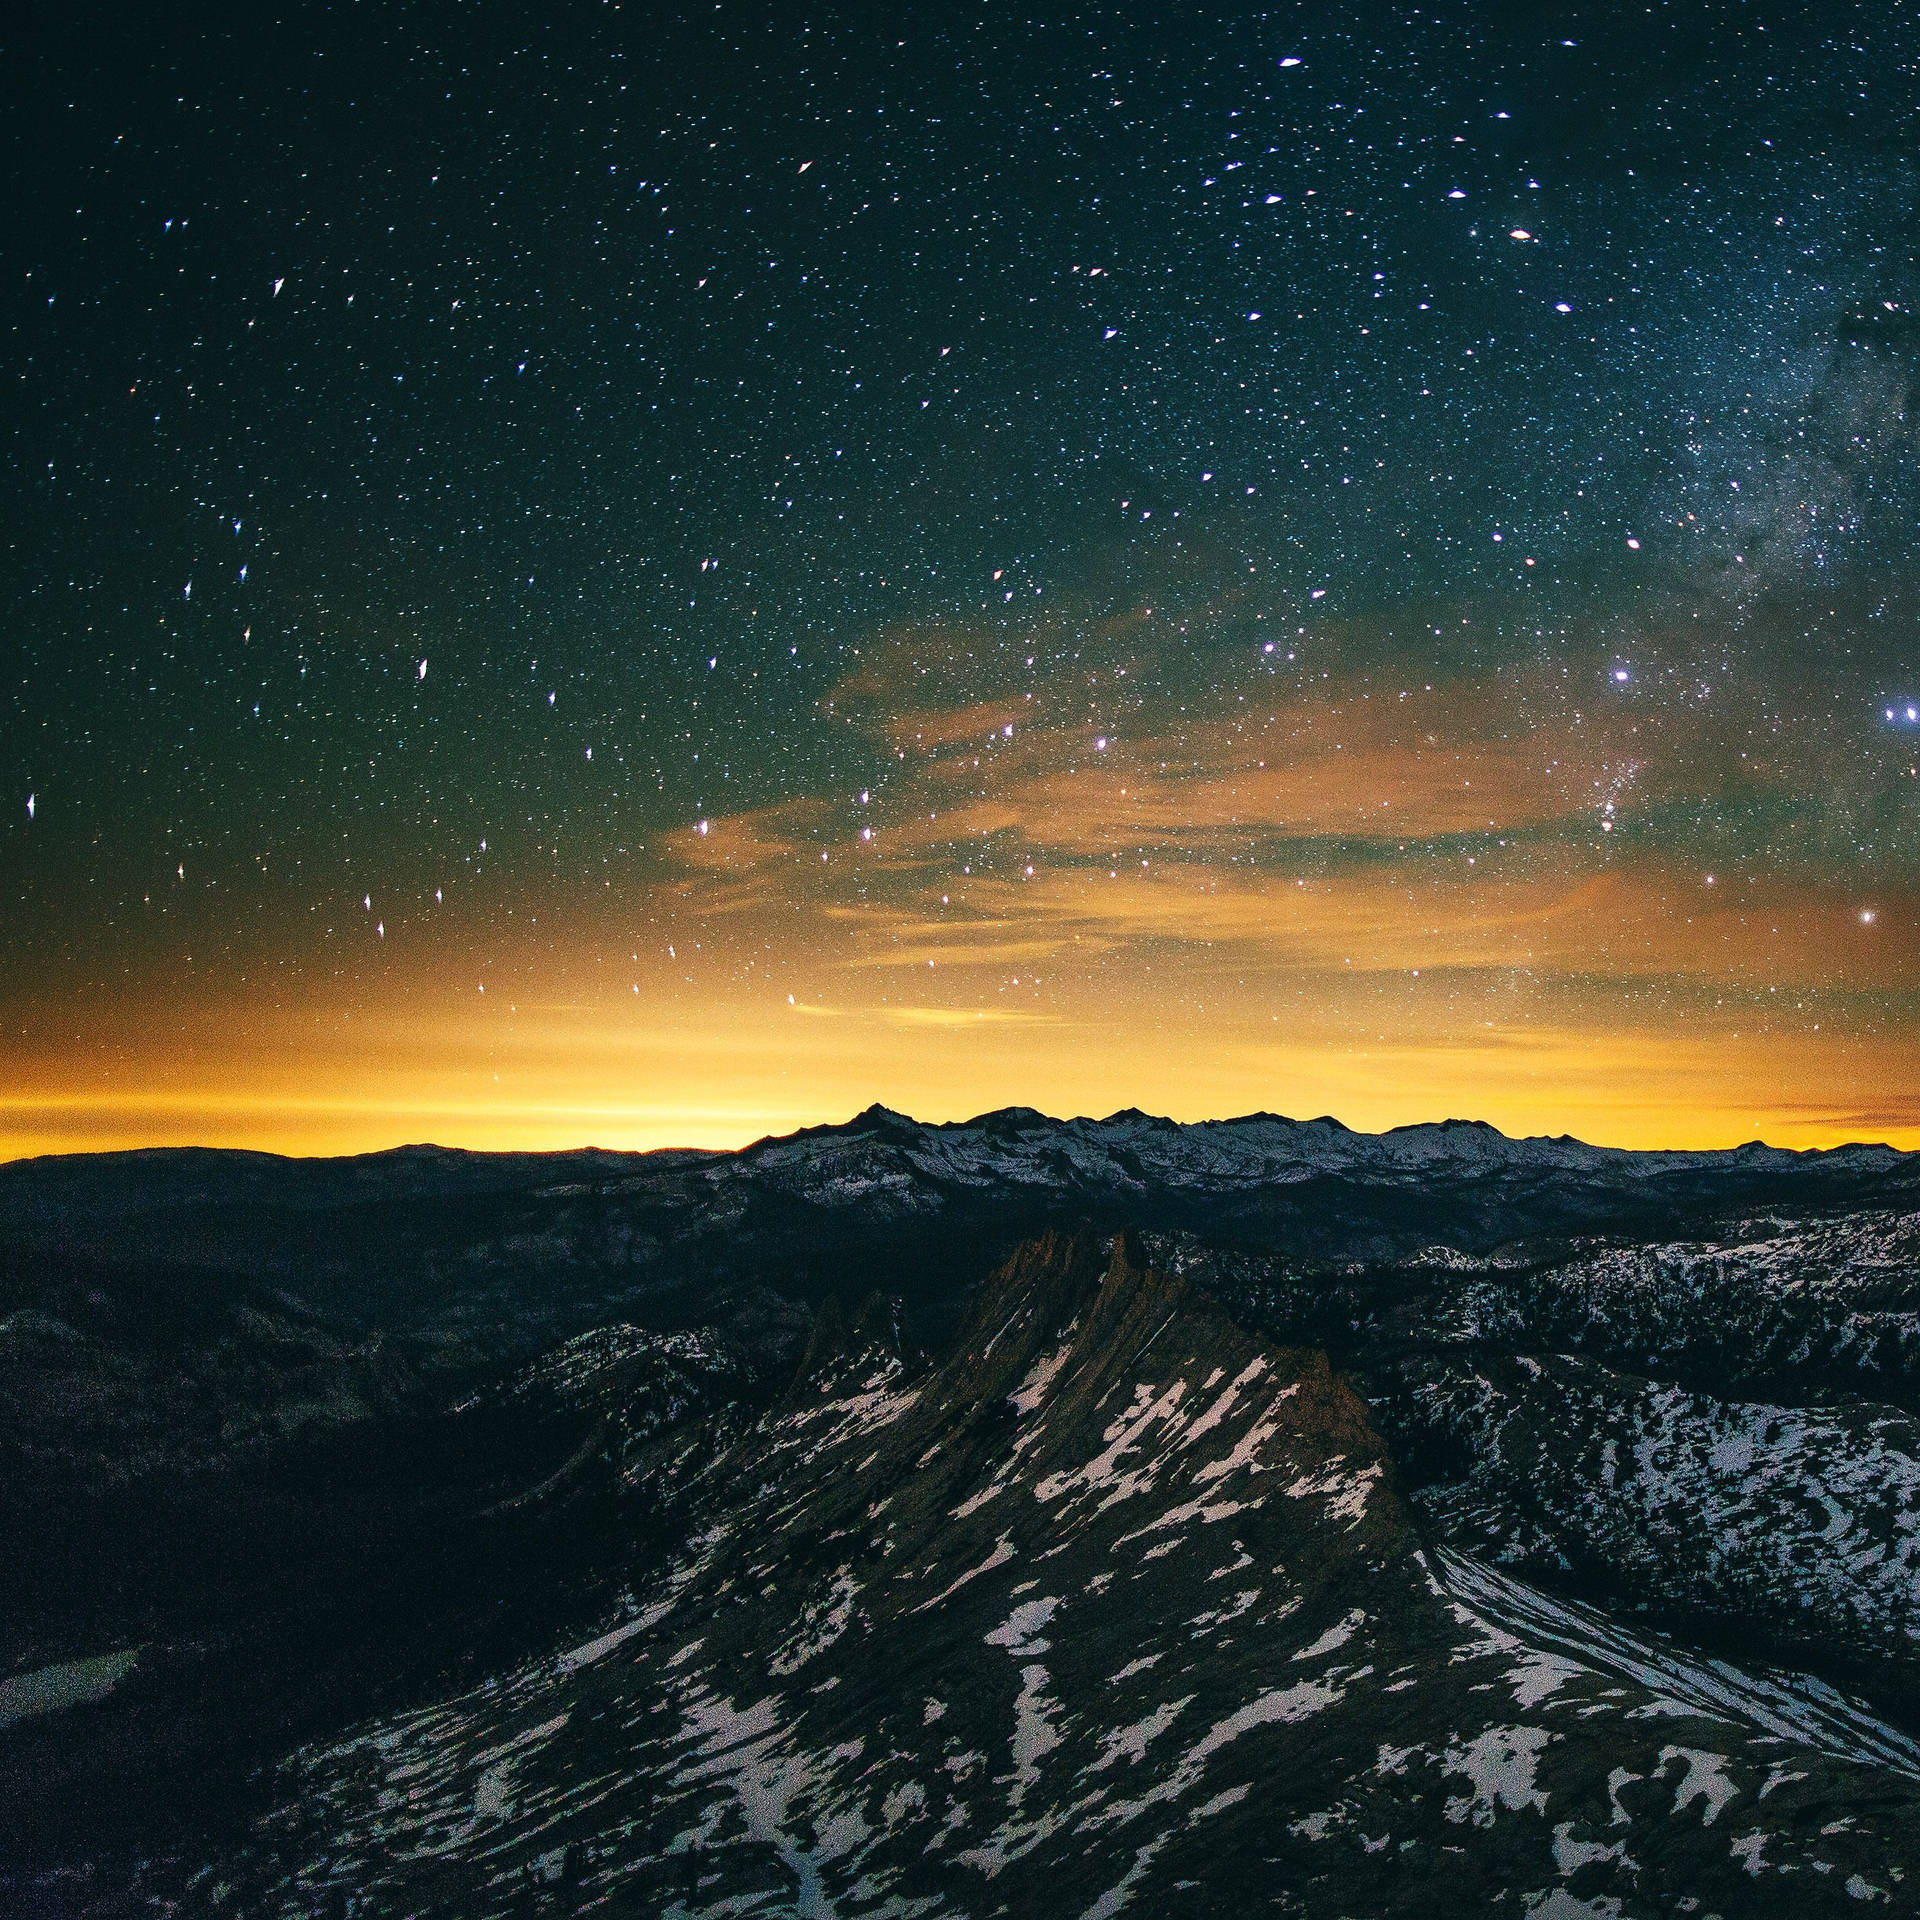 Ipad Pro Starry Sunset On Mountains Wallpaper